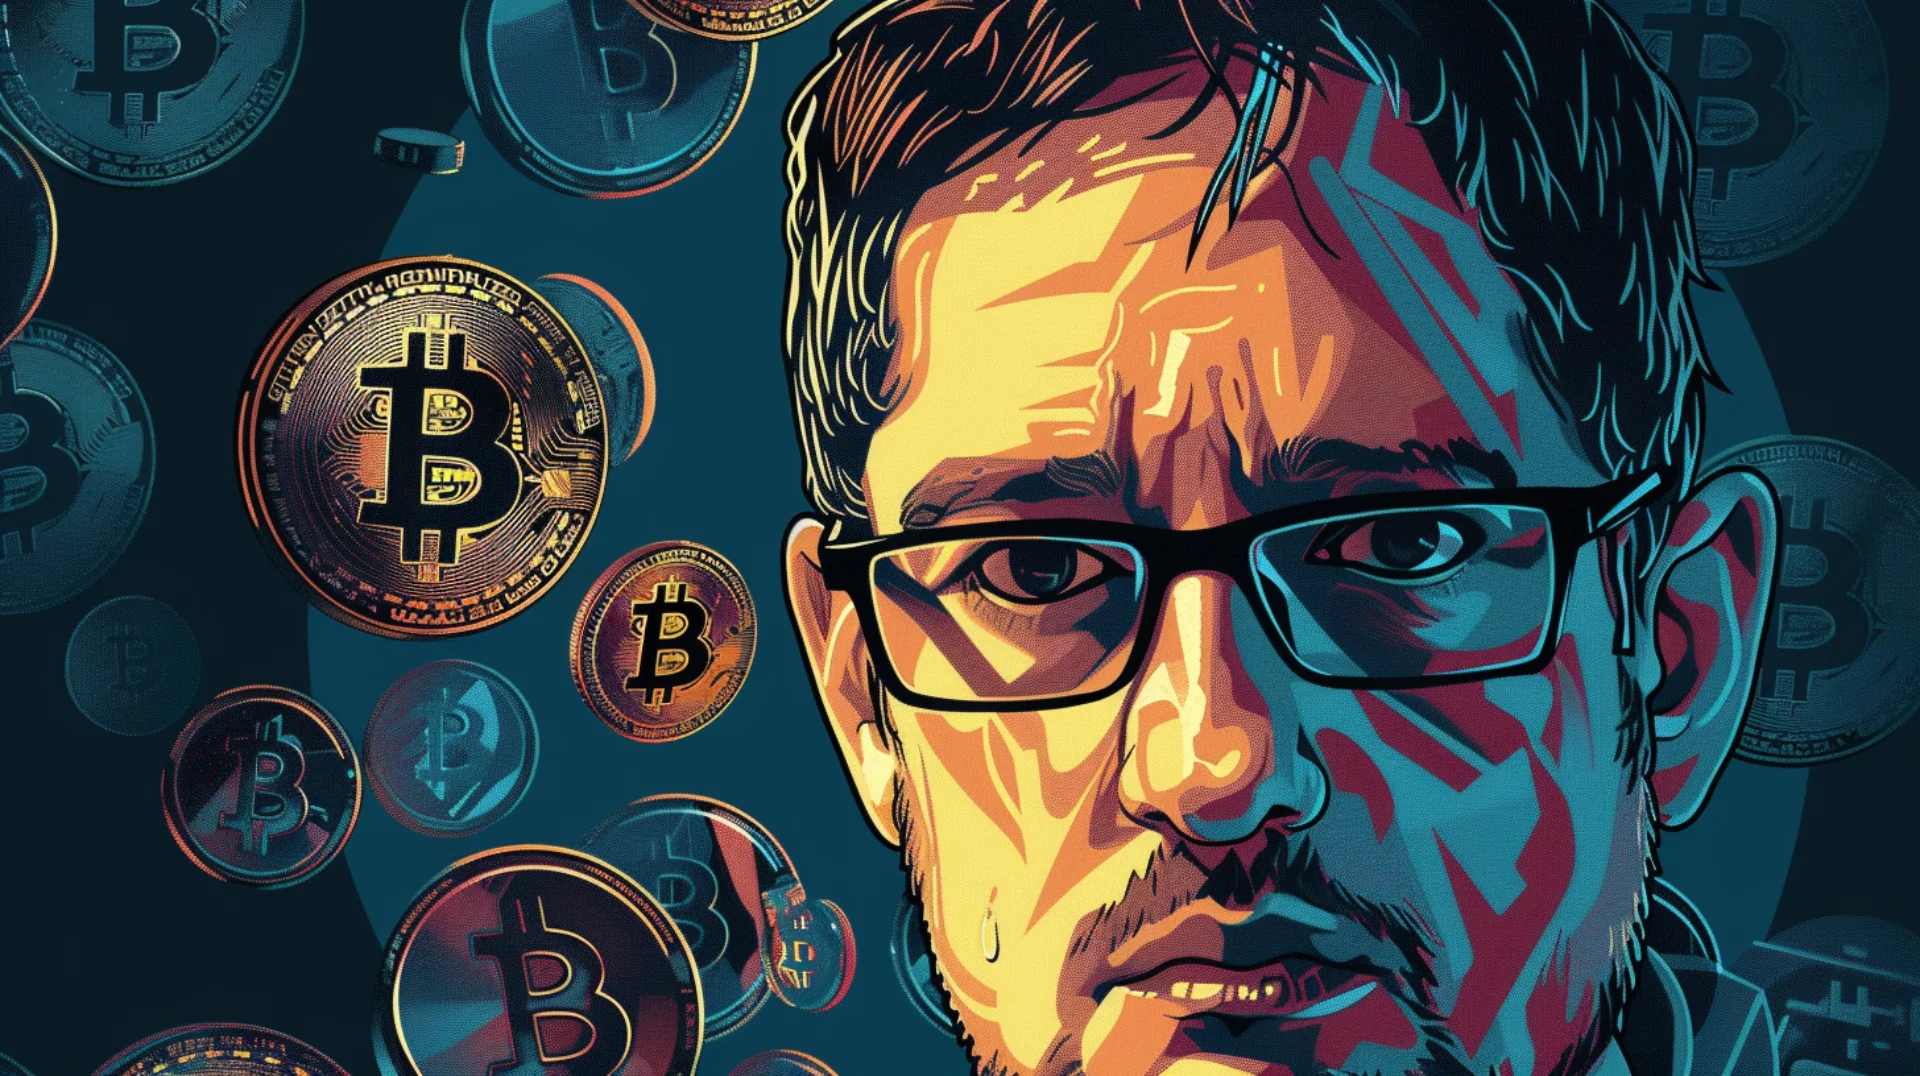 Edward Snowden lance un dernier avertissement sur la confidentialité du Bitcoin